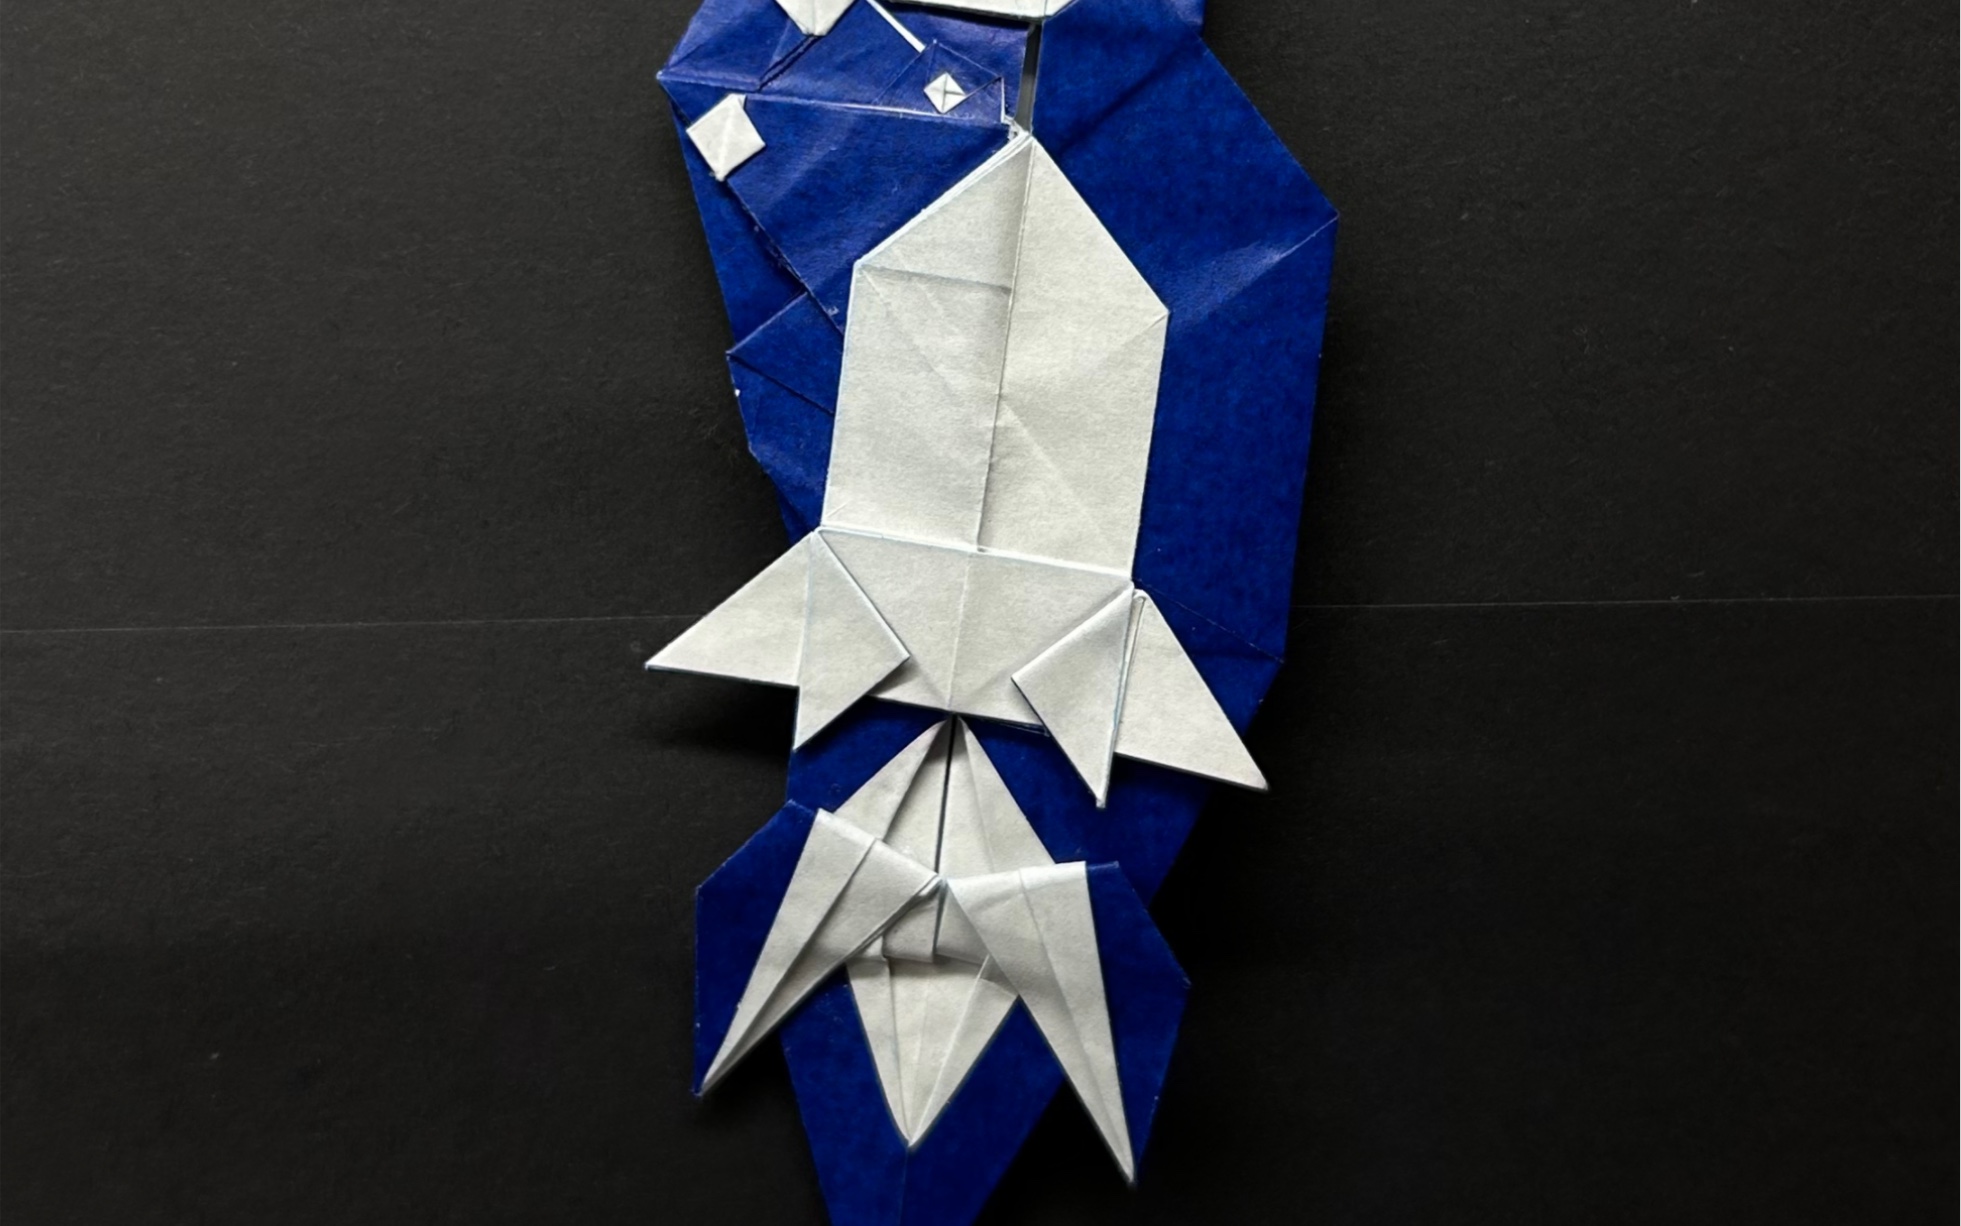 火箭折纸的教程图片